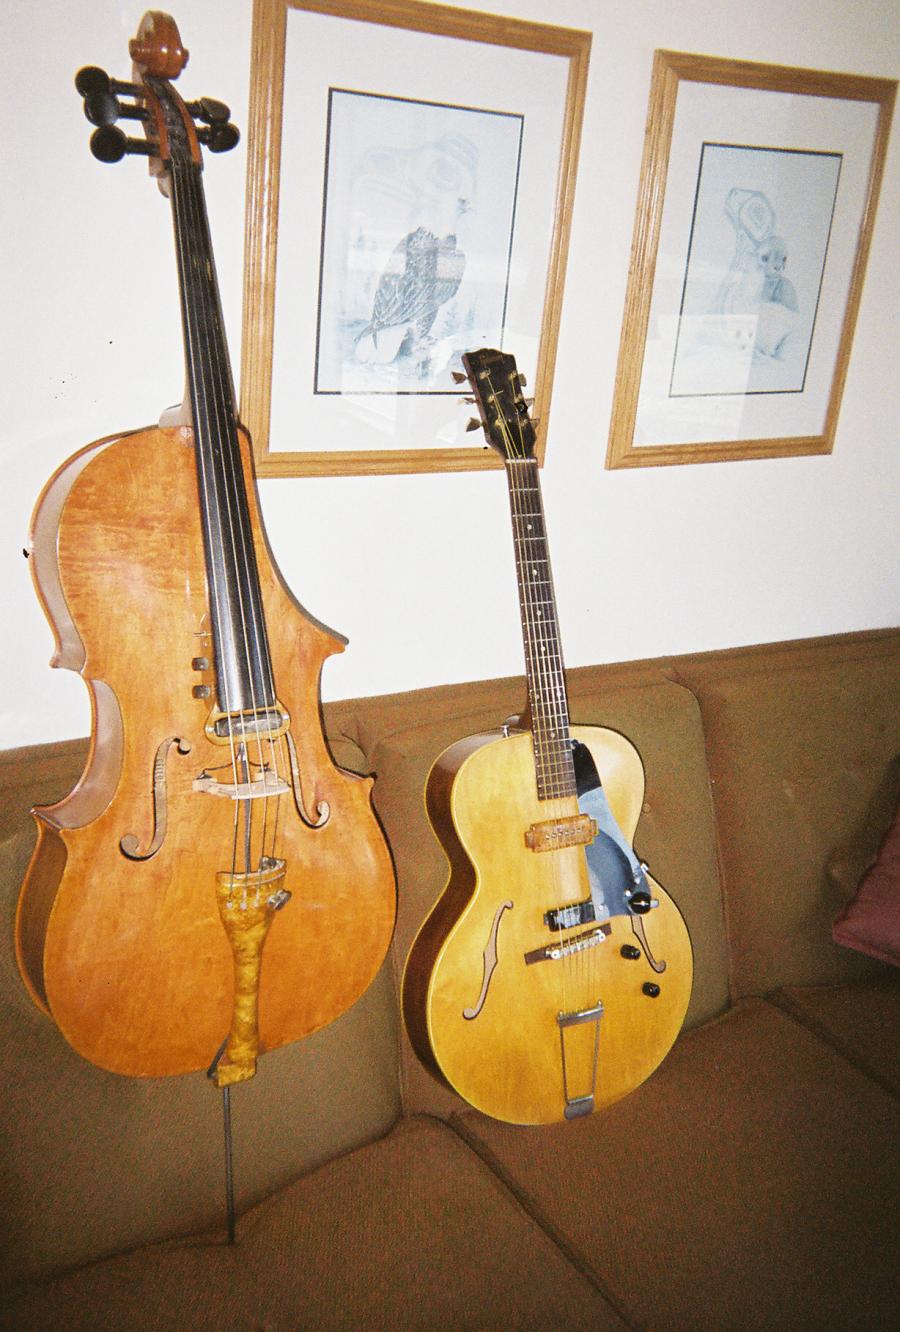 Alden A150 (Gibson ES-125 Clone)-cello-guitar-jpg